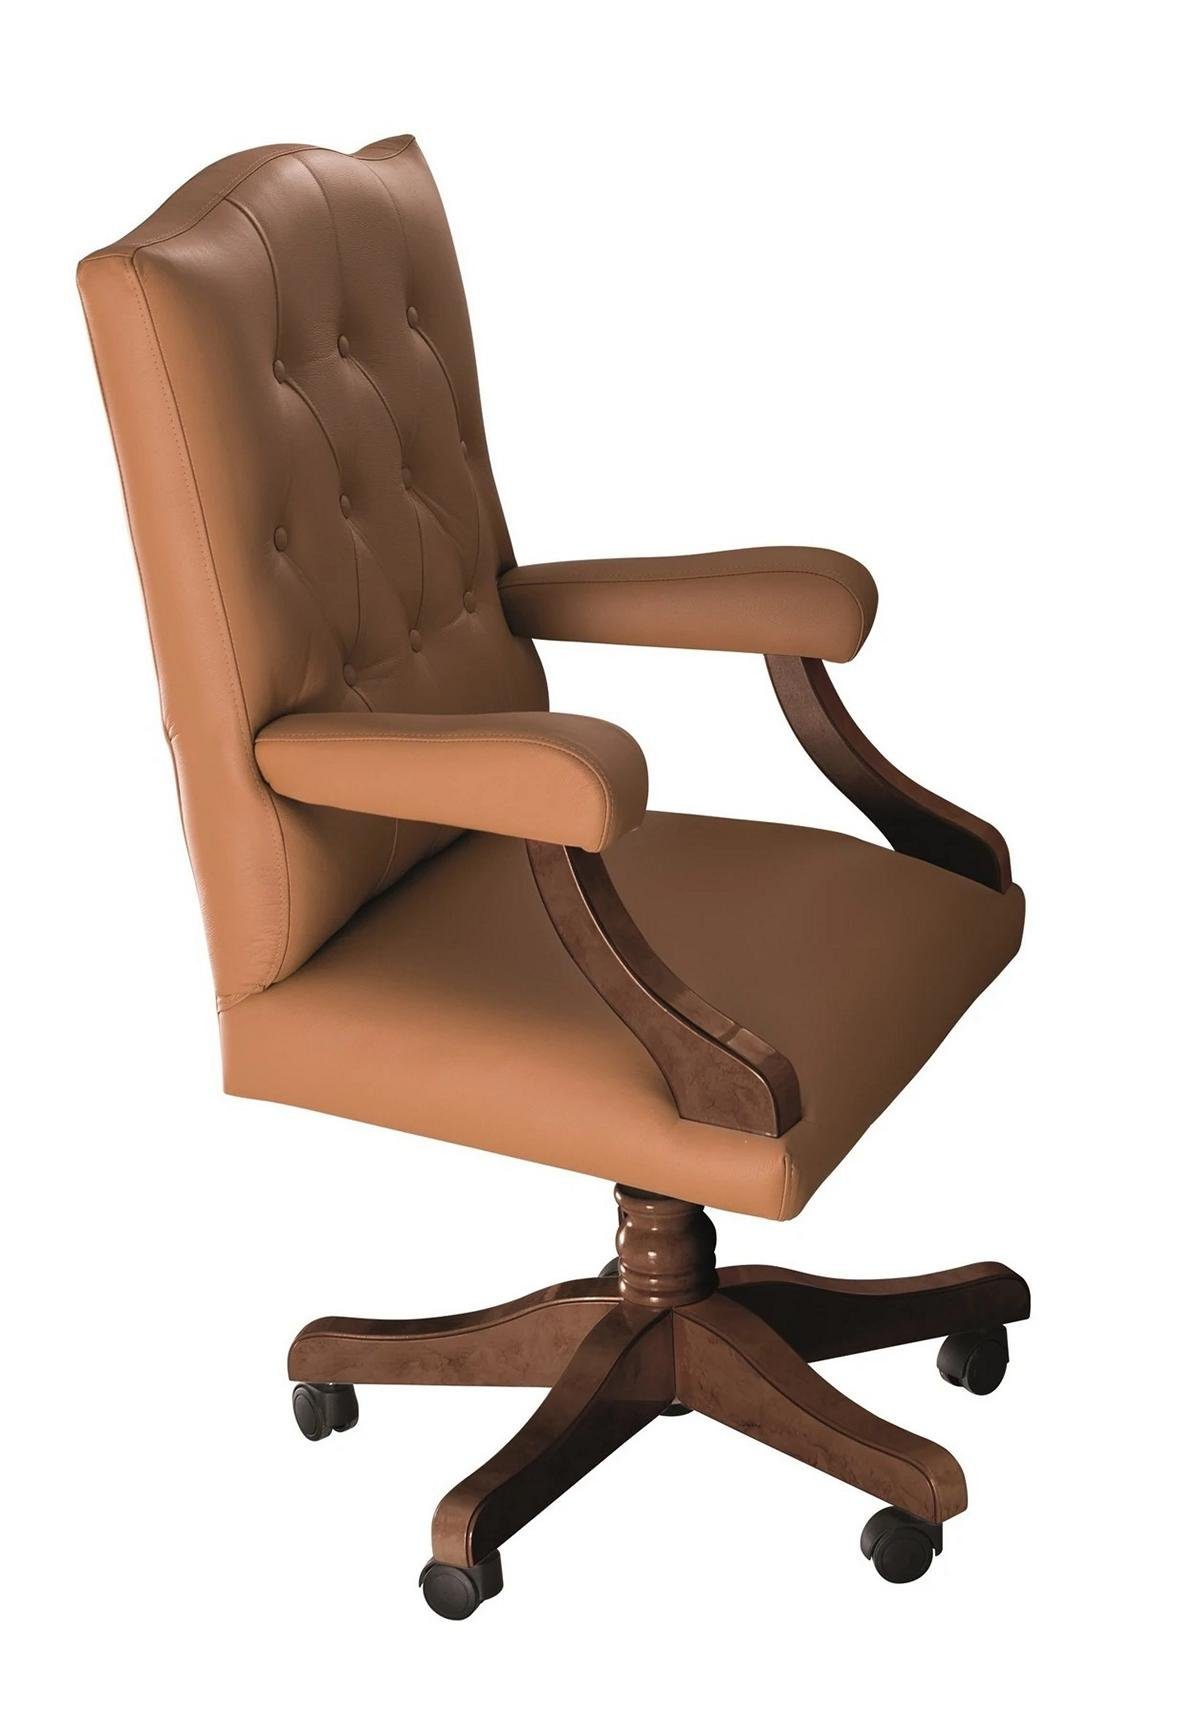 JVmoebel Bürostuhl Stuhl Einrichtung Stühle Bürostuhl Office Büro Drehstuhl Neu Chefsessel Sessel